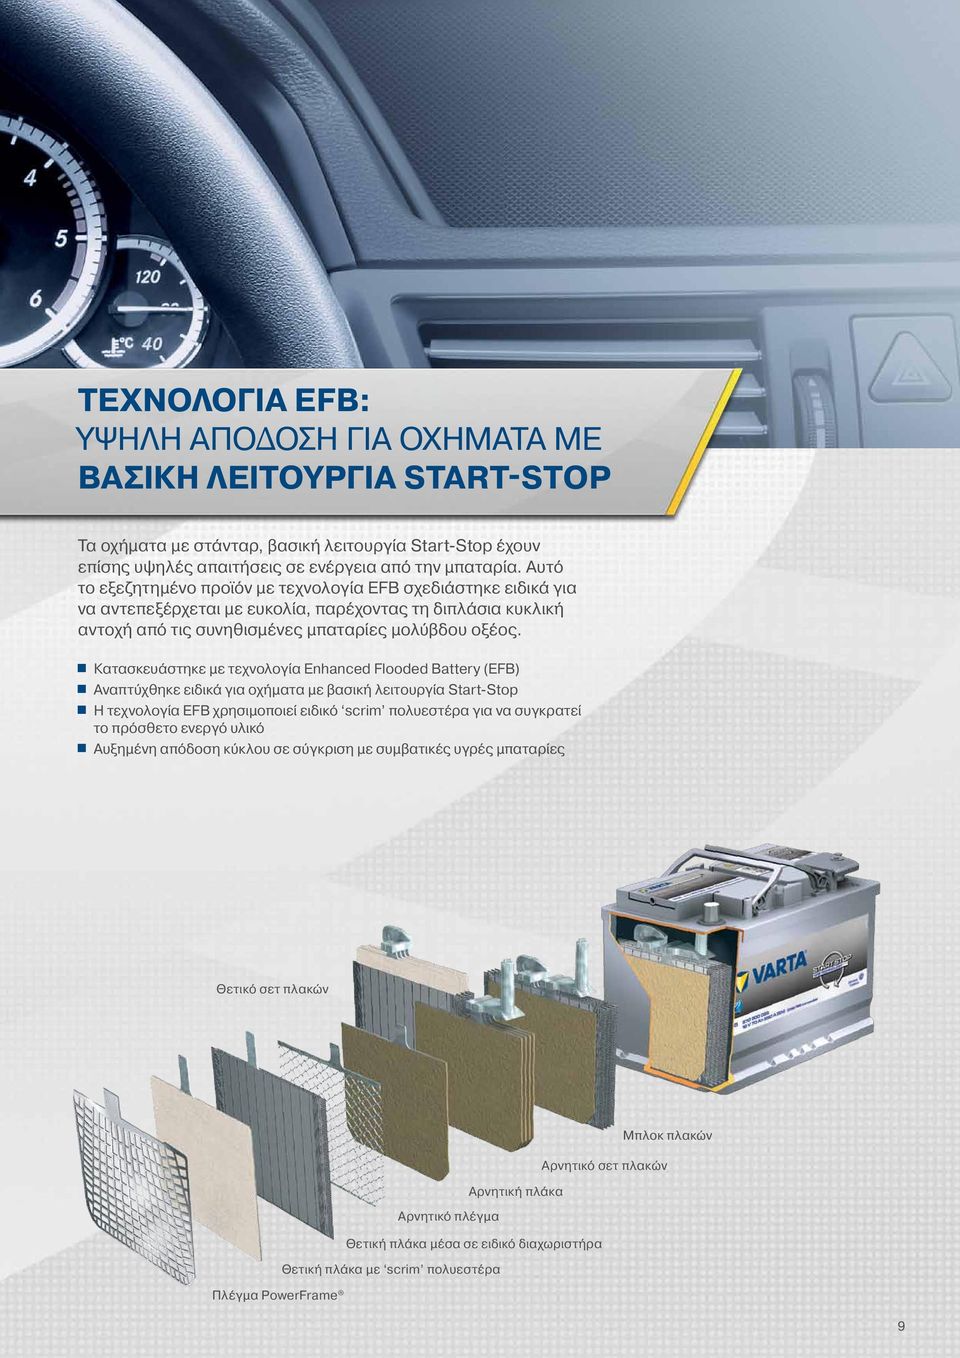 Κατασκευάστηκε με τεχνολογία Enhanced Flooded Battery (EFB) Αναπτύχθηκε ειδικά για οχήματα με βασική λειτουργία Start-Stop Η τεχνολογία EFB χρησιμοποιεί ειδικό scrim πολυεστέρα για να συγκρατεί το